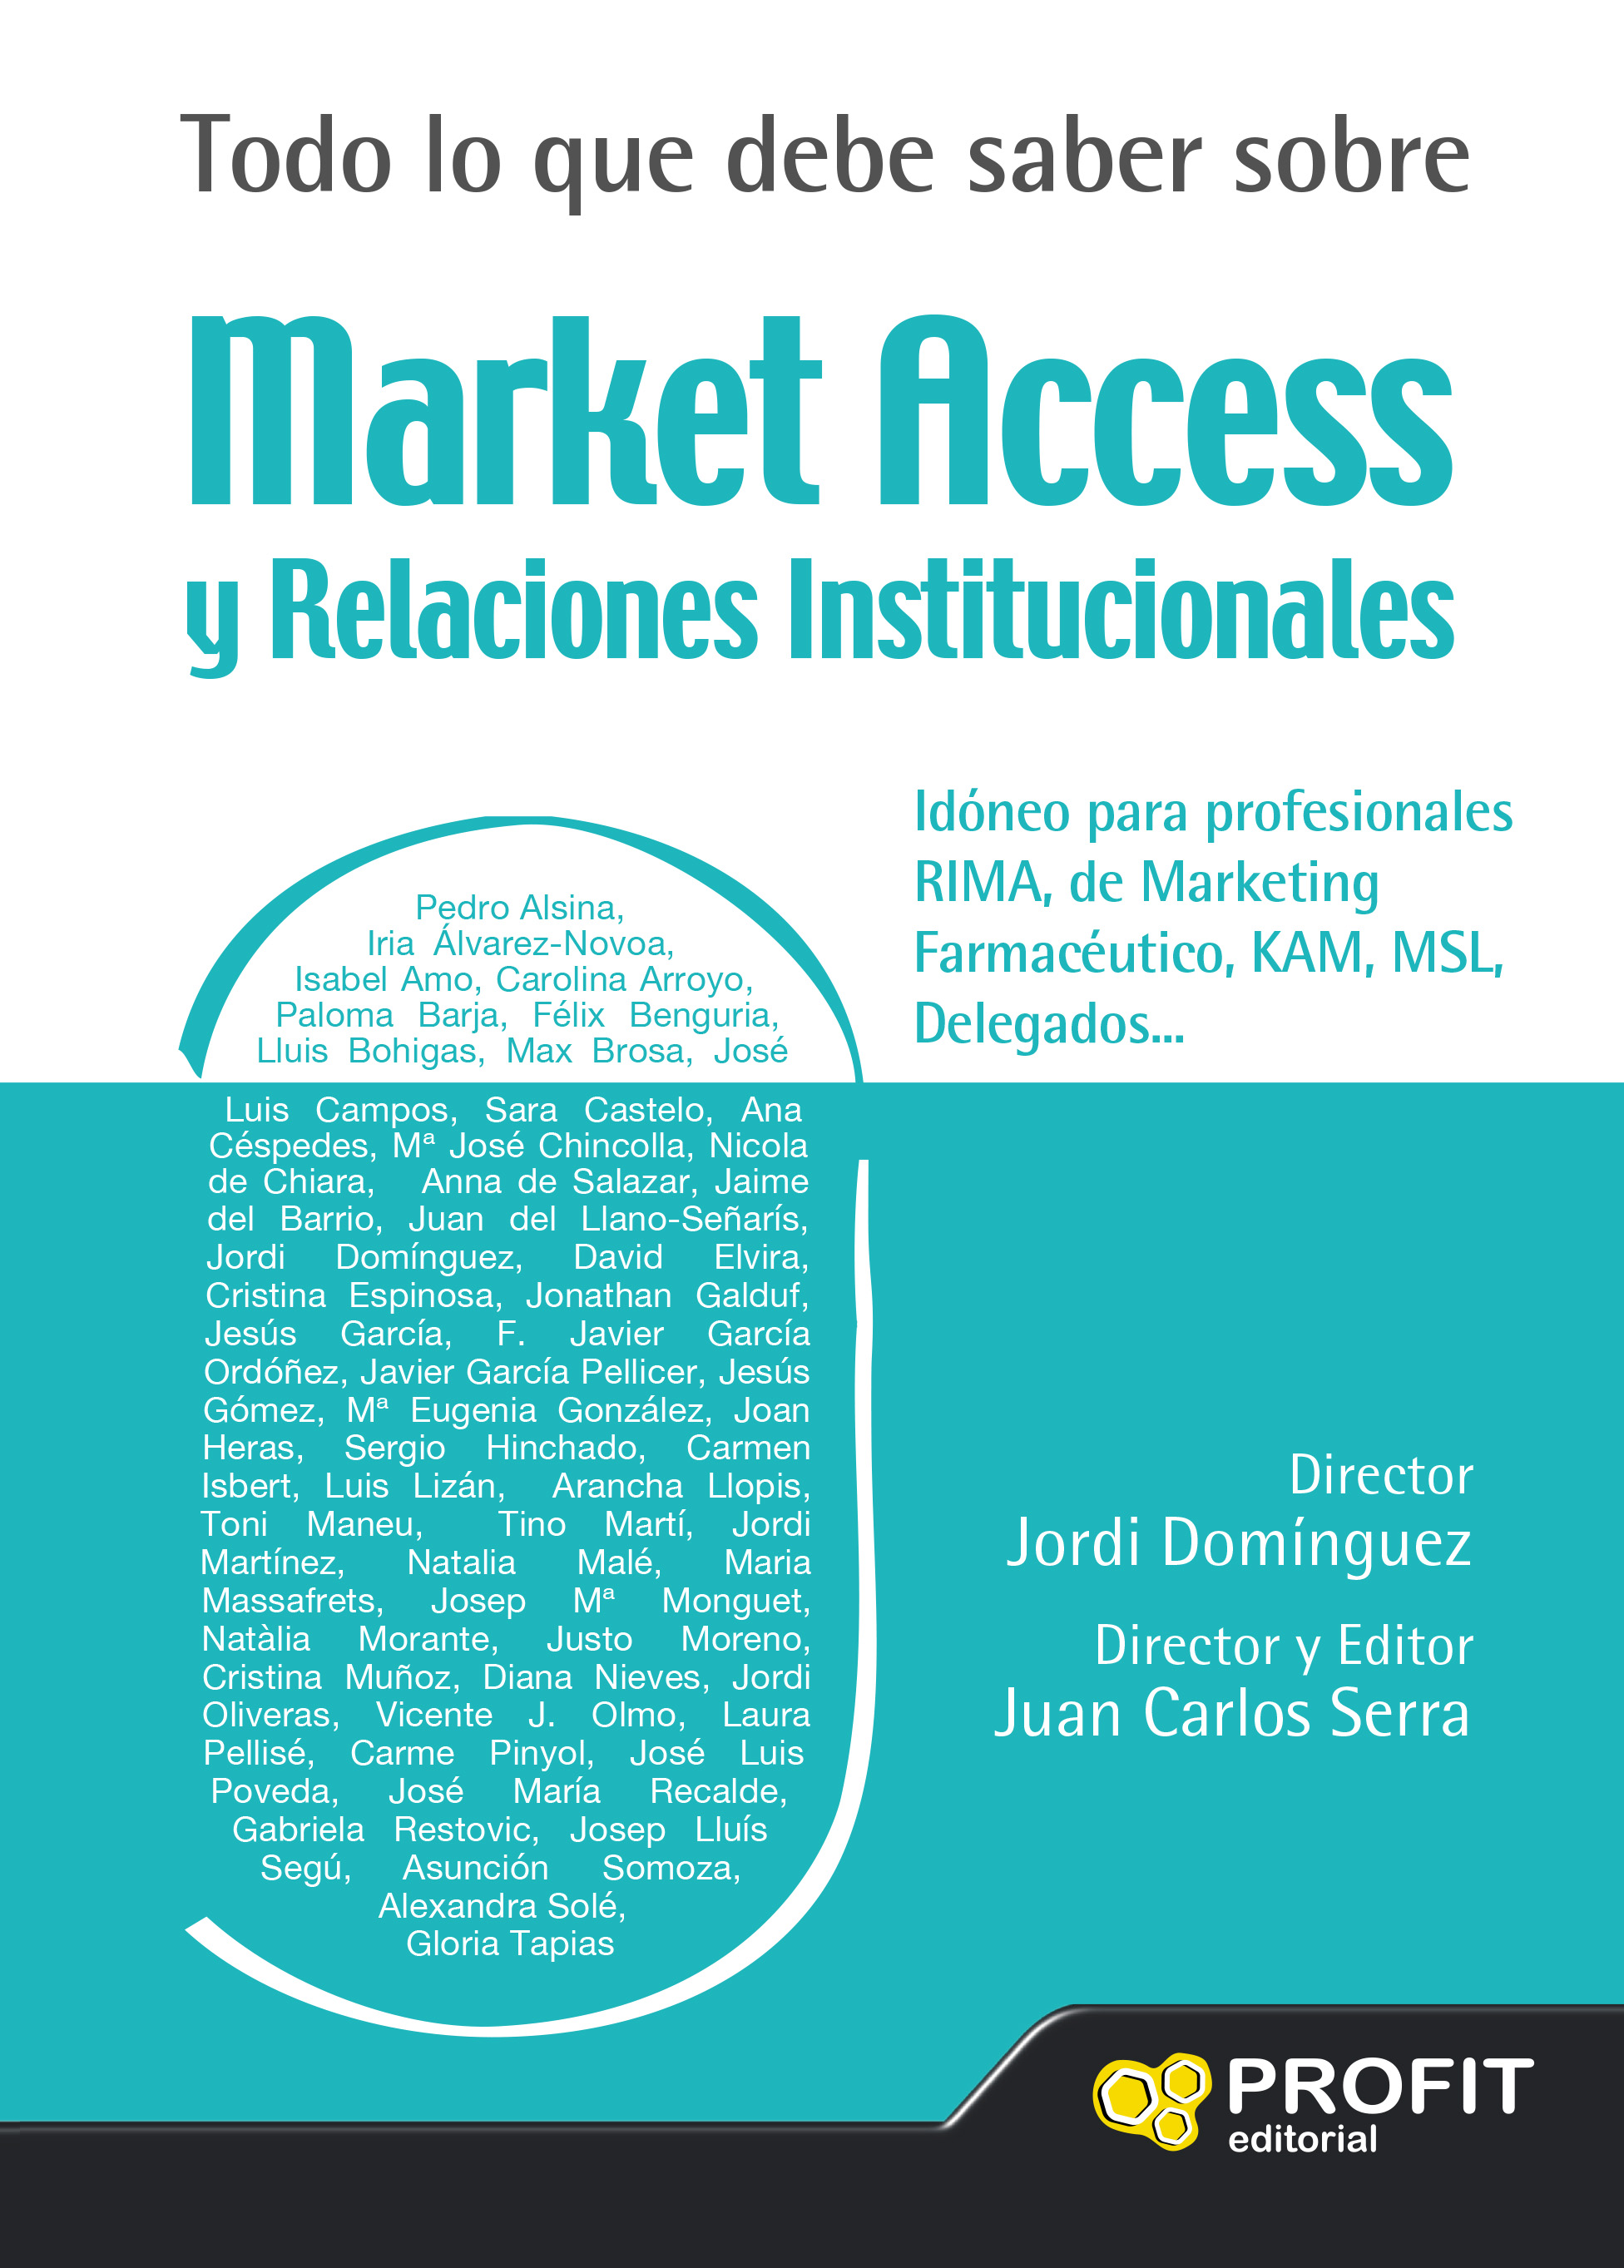 Todo lo que debe saber sobre Market Access y relaciones institucionales